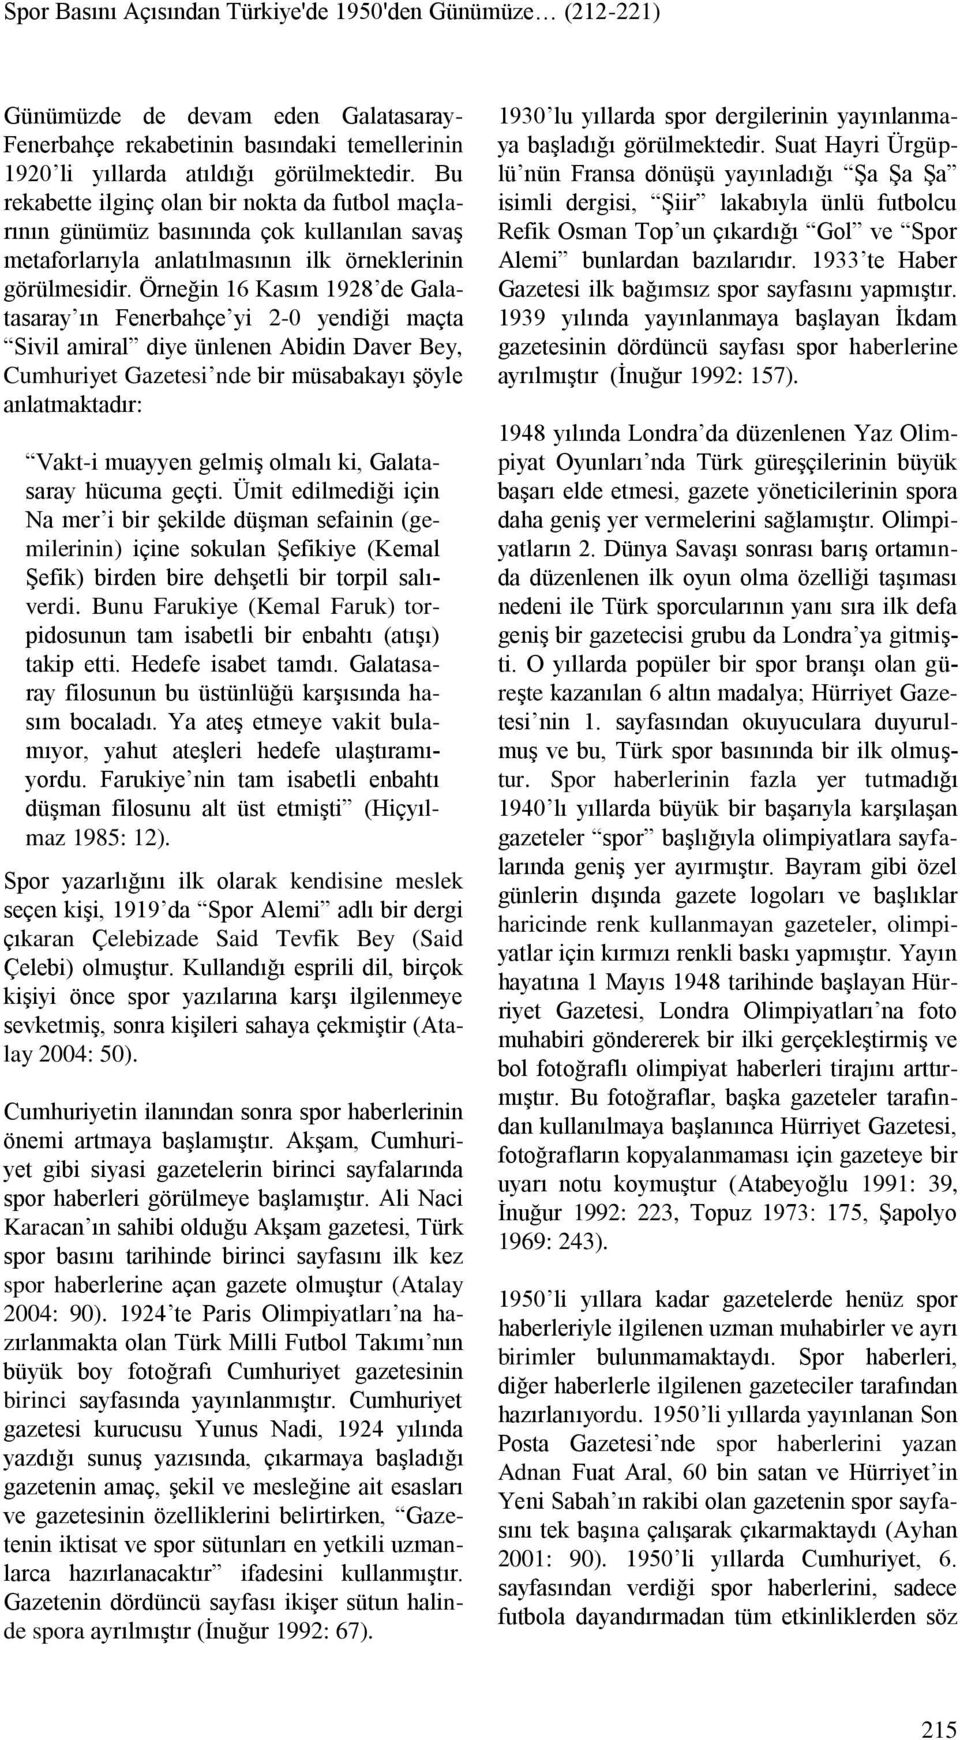 Örneğin 16 Kasım 1928 de Galatasaray ın Fenerbahçe yi 2-0 yendiği maçta Sivil amiral diye ünlenen Abidin Daver Bey, Cumhuriyet Gazetesi nde bir müsabakayı şöyle anlatmaktadır: Vakt-i muayyen gelmiş